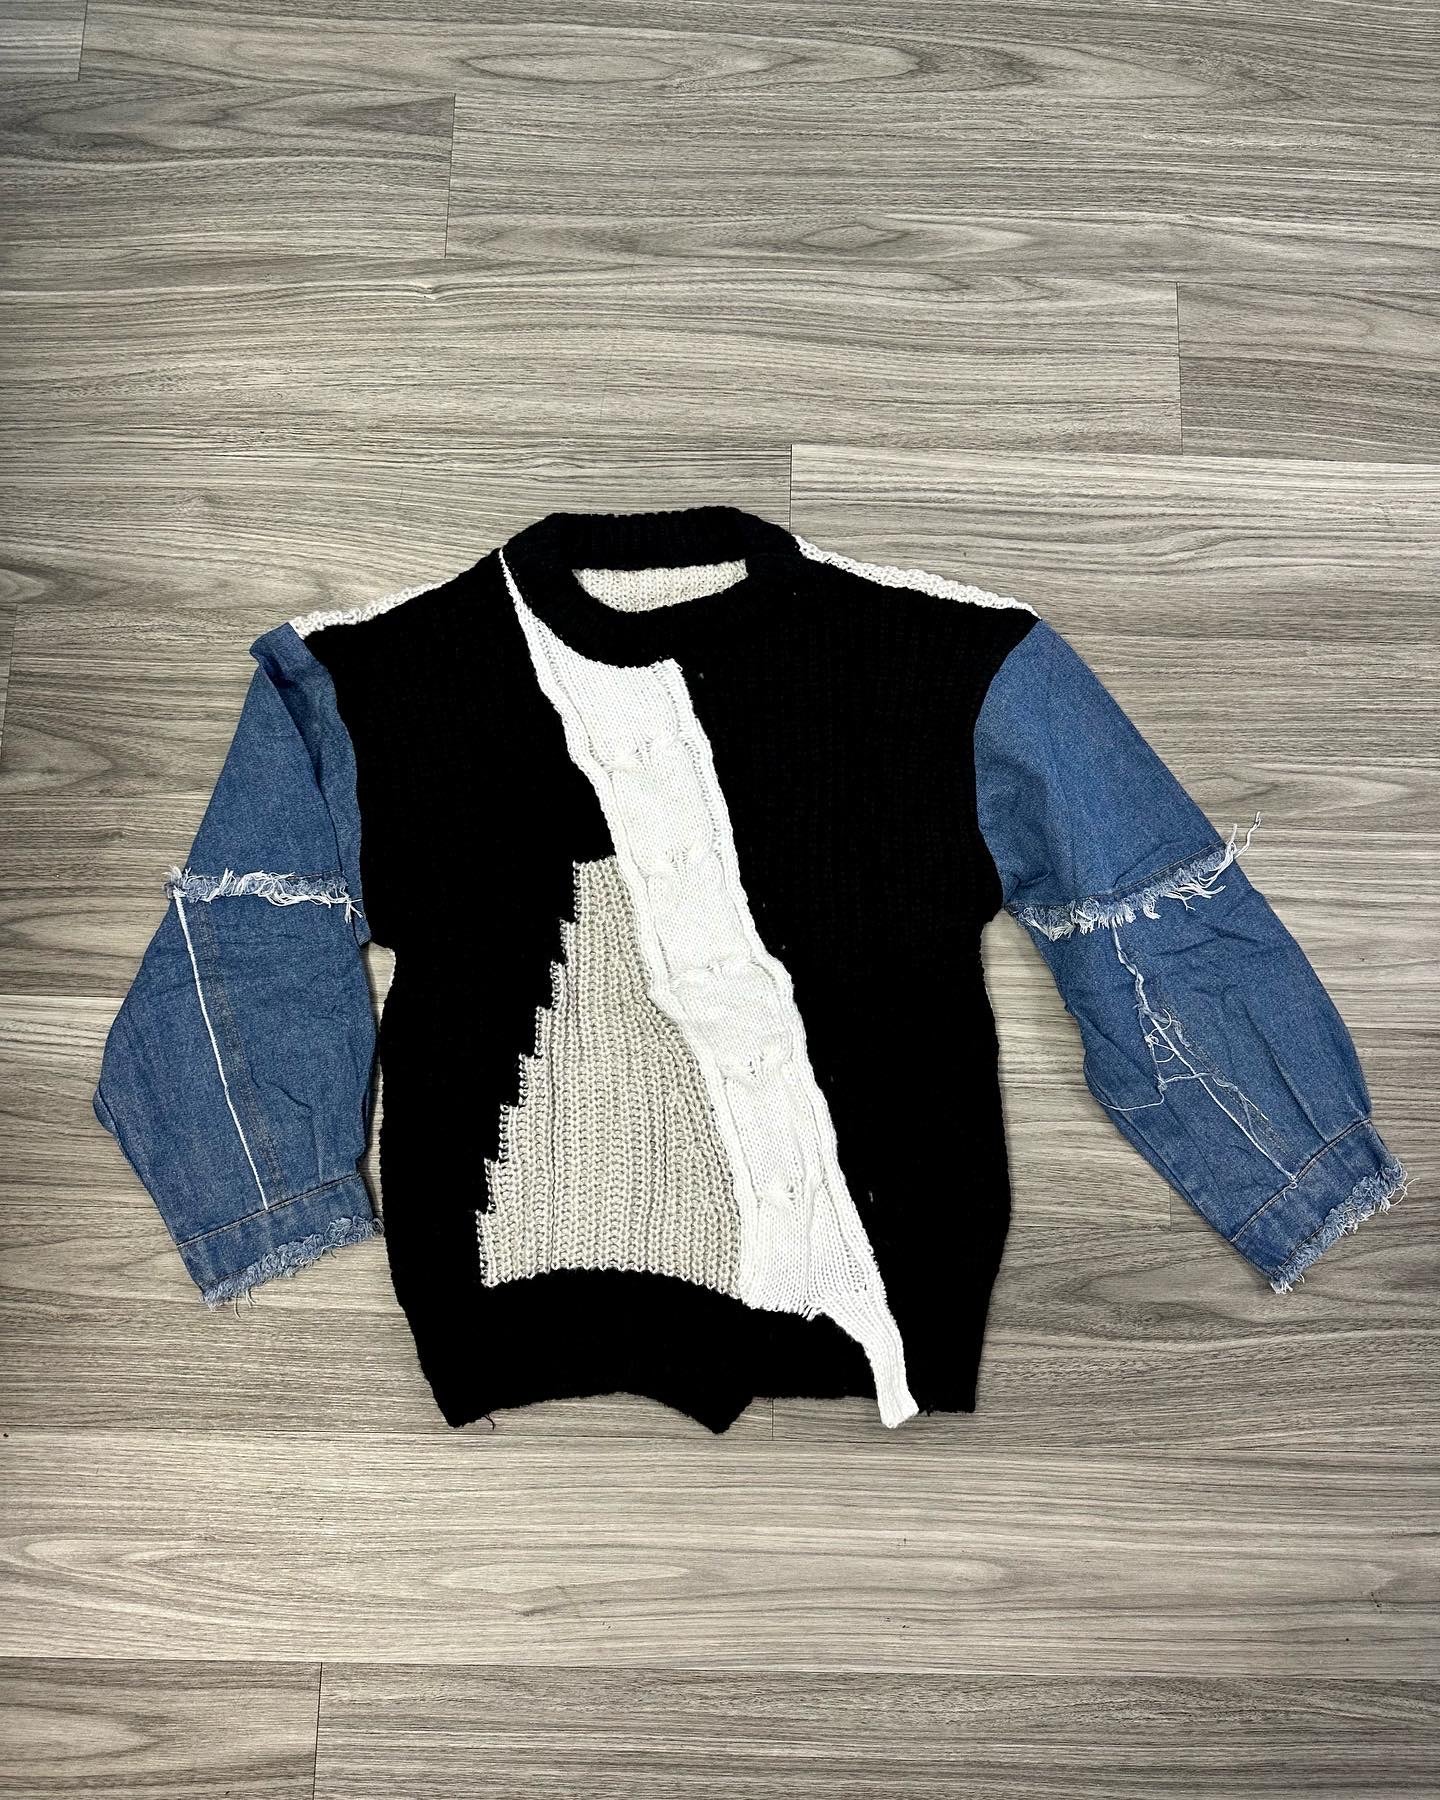 JeanXSweater Top (Black)-OS  JeanXSweater Top  Black JeanXSweater Top  Sweater Top  Ladies sweater top